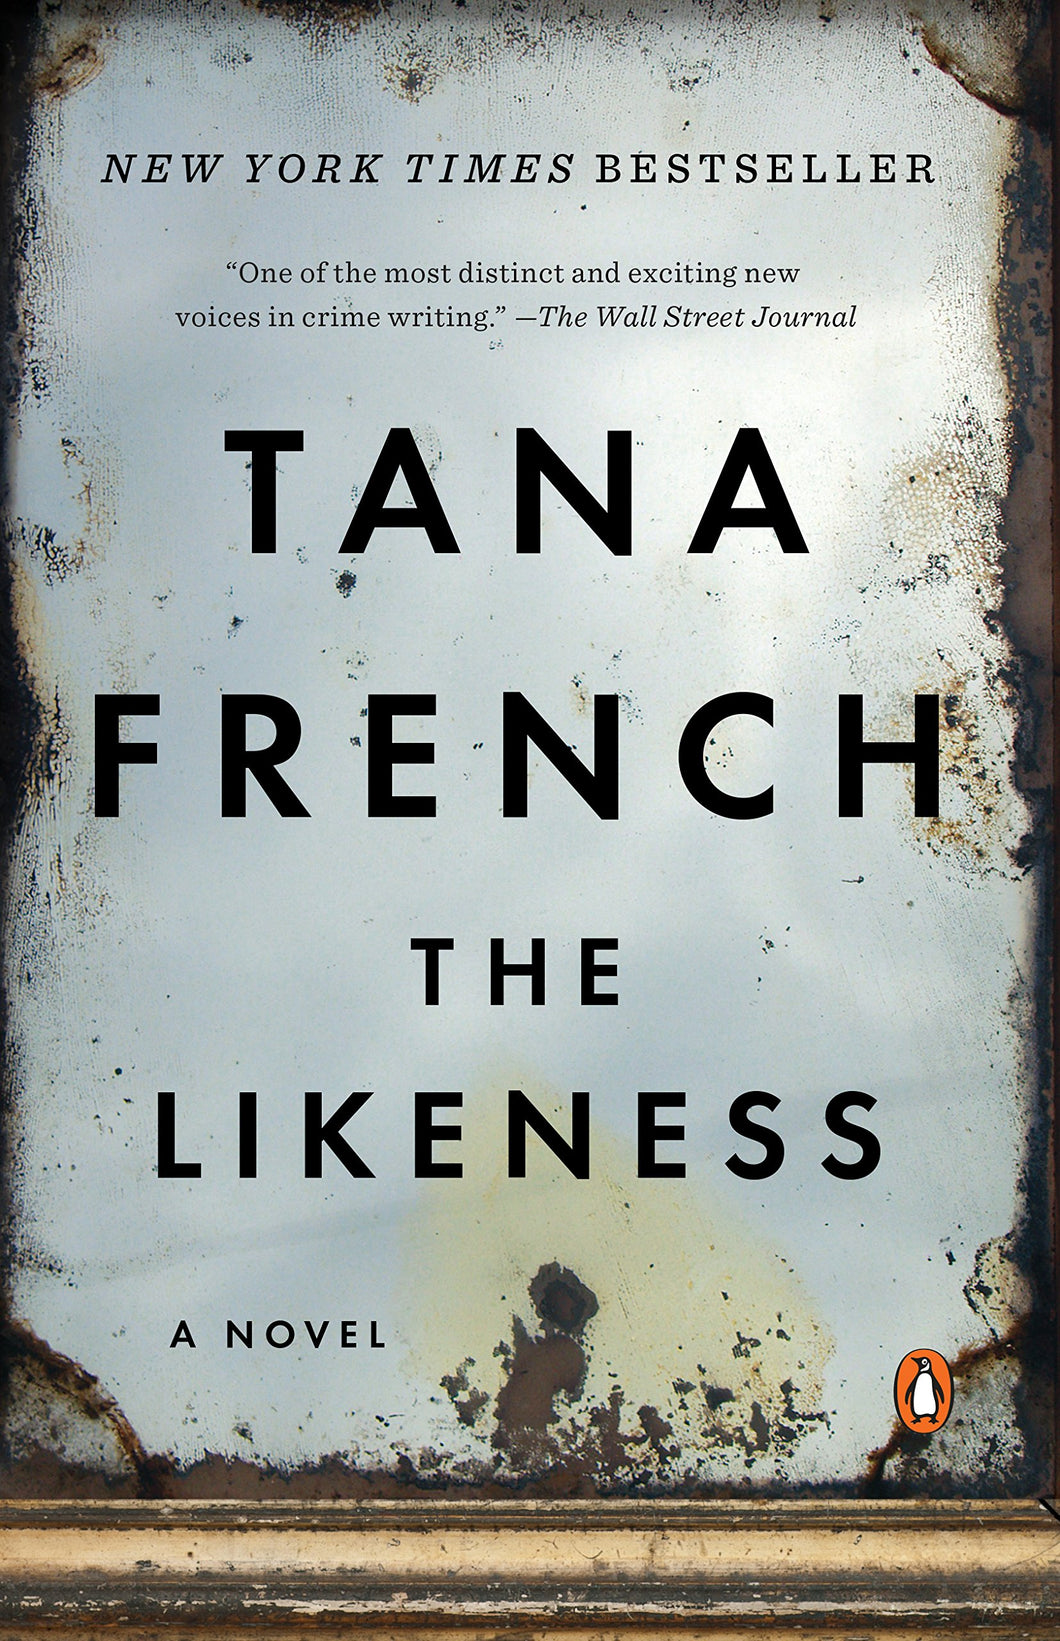 The Likeness: A Novel